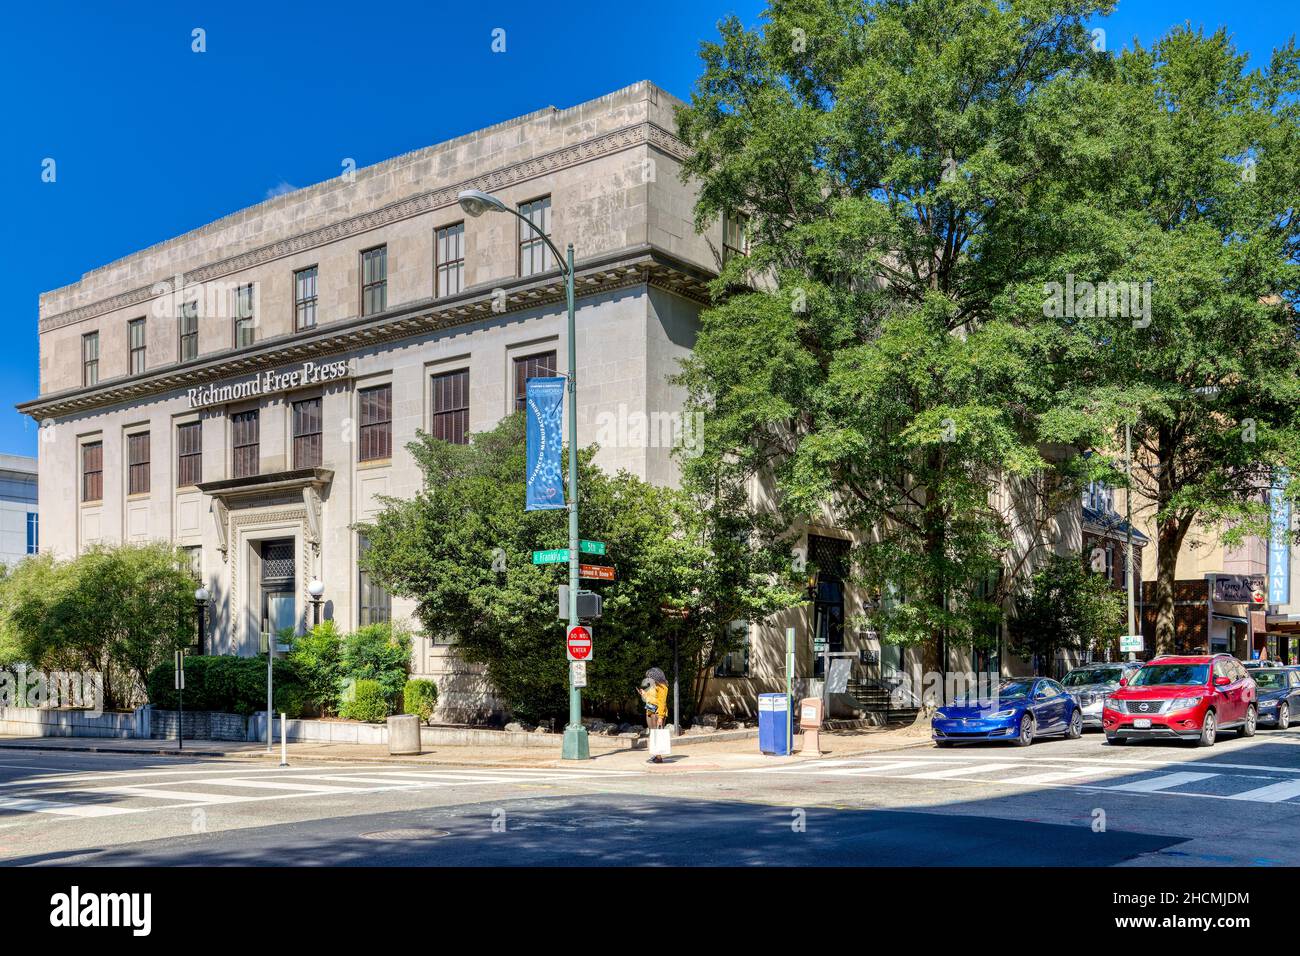 Édifice Imperial, Richmond Free Press, édifice néo-classique situé au 422, rue Franklin est. Banque D'Images